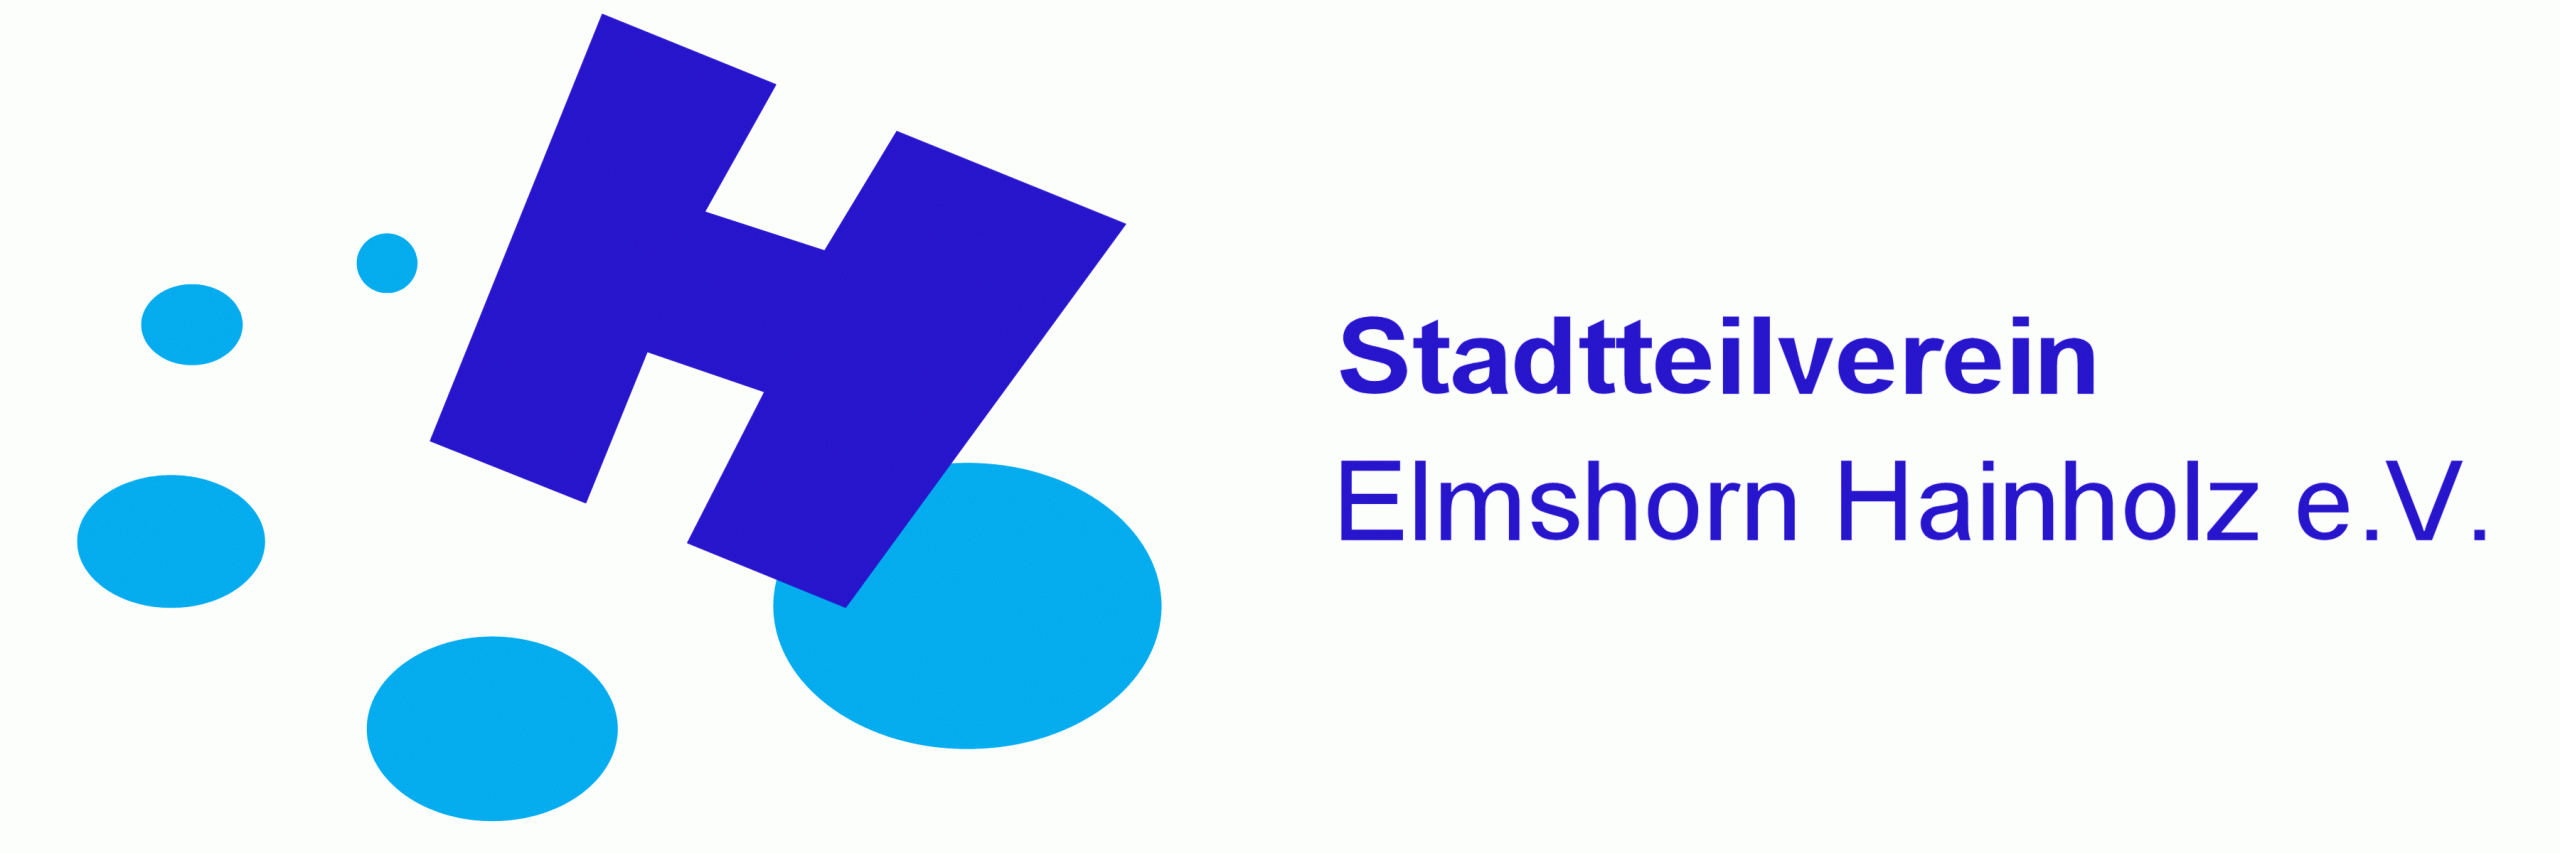 Stadtteilverein Elmshorn-Hainholz e.V.